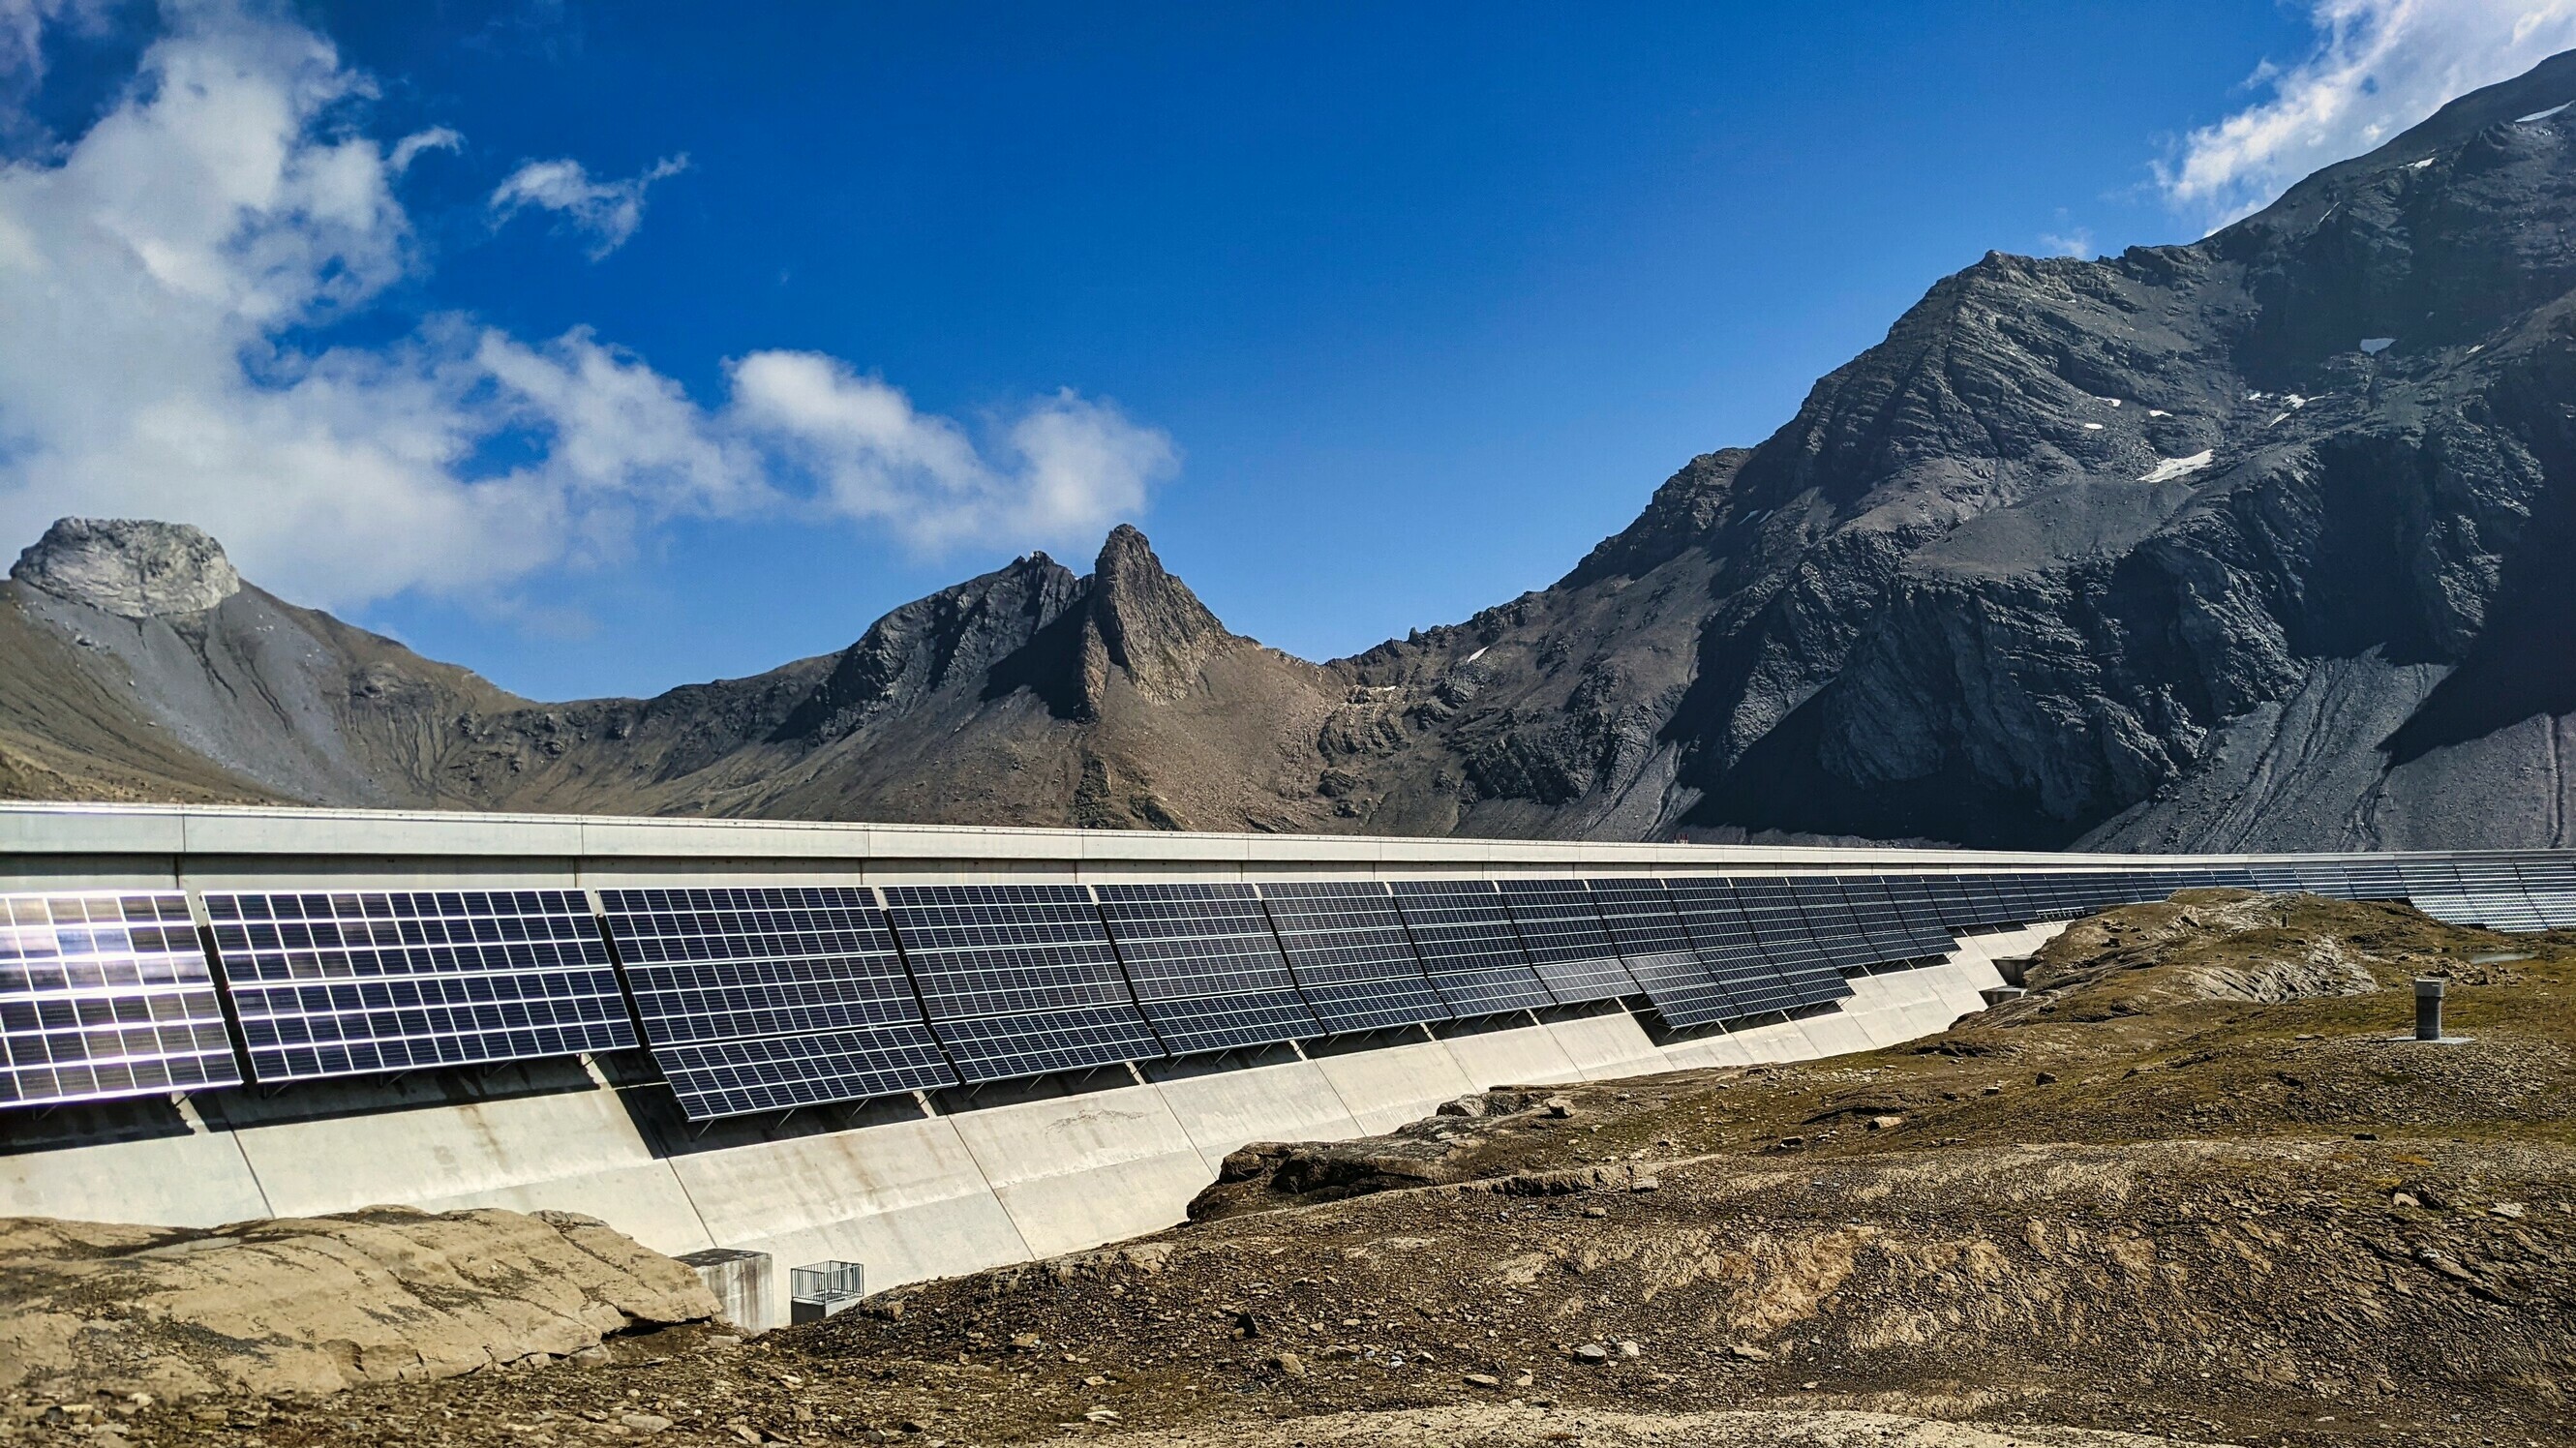 Der Studiengang Erneuerbare Energien und Umwelttechnik der OST befasst sich unter anderem mit der Erzeugung elektrischer Energie, wie beispielsweise durch Solartechnik oder Wasserkraft.